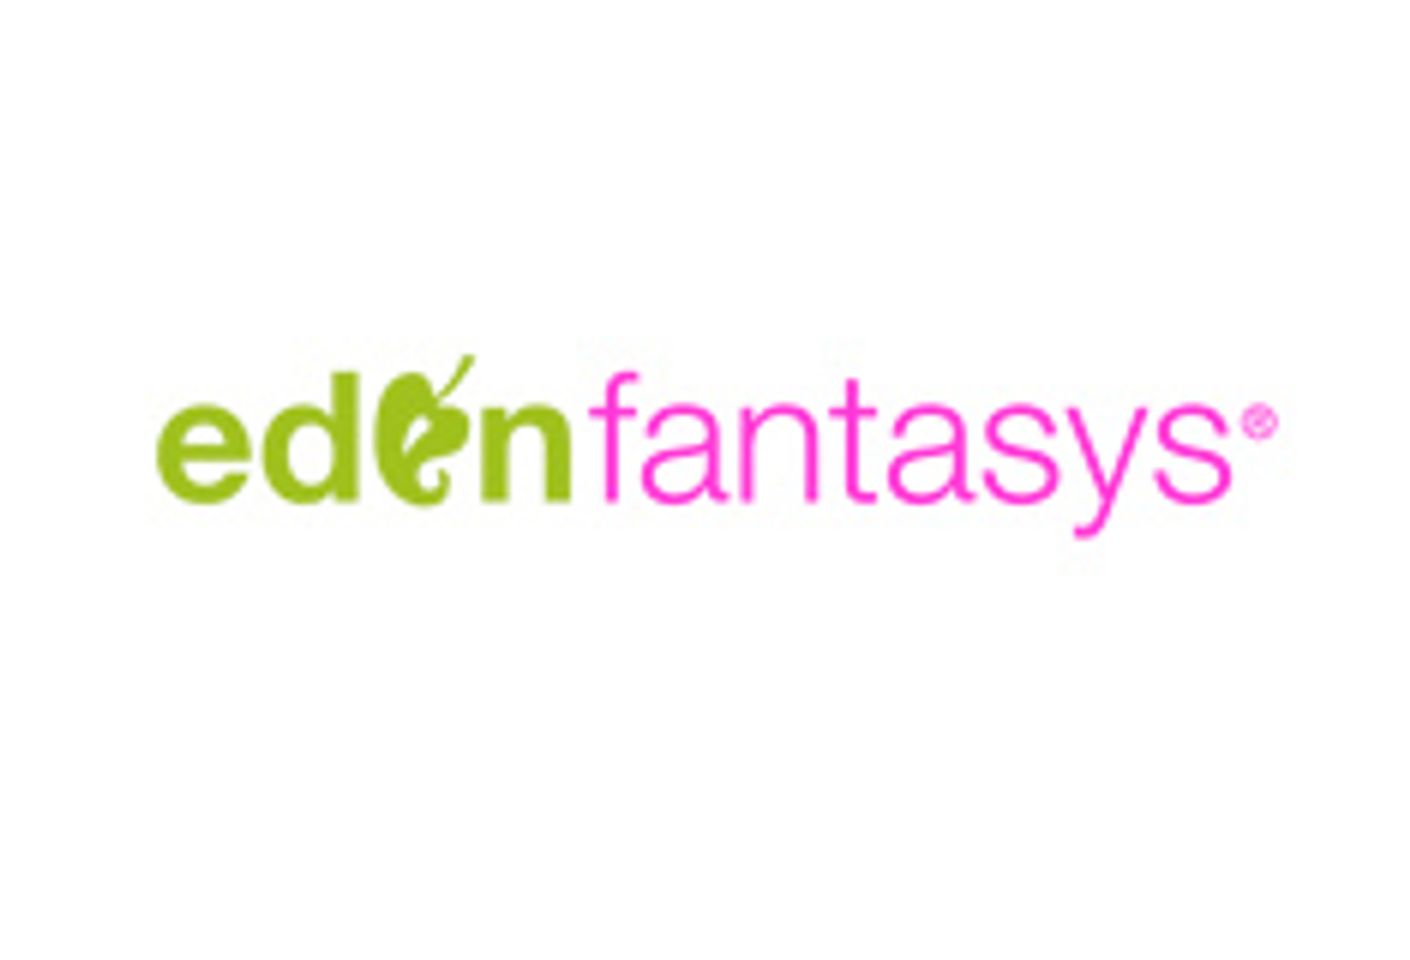 EdenFantasys Signs On As BlogHer11 Sponsor